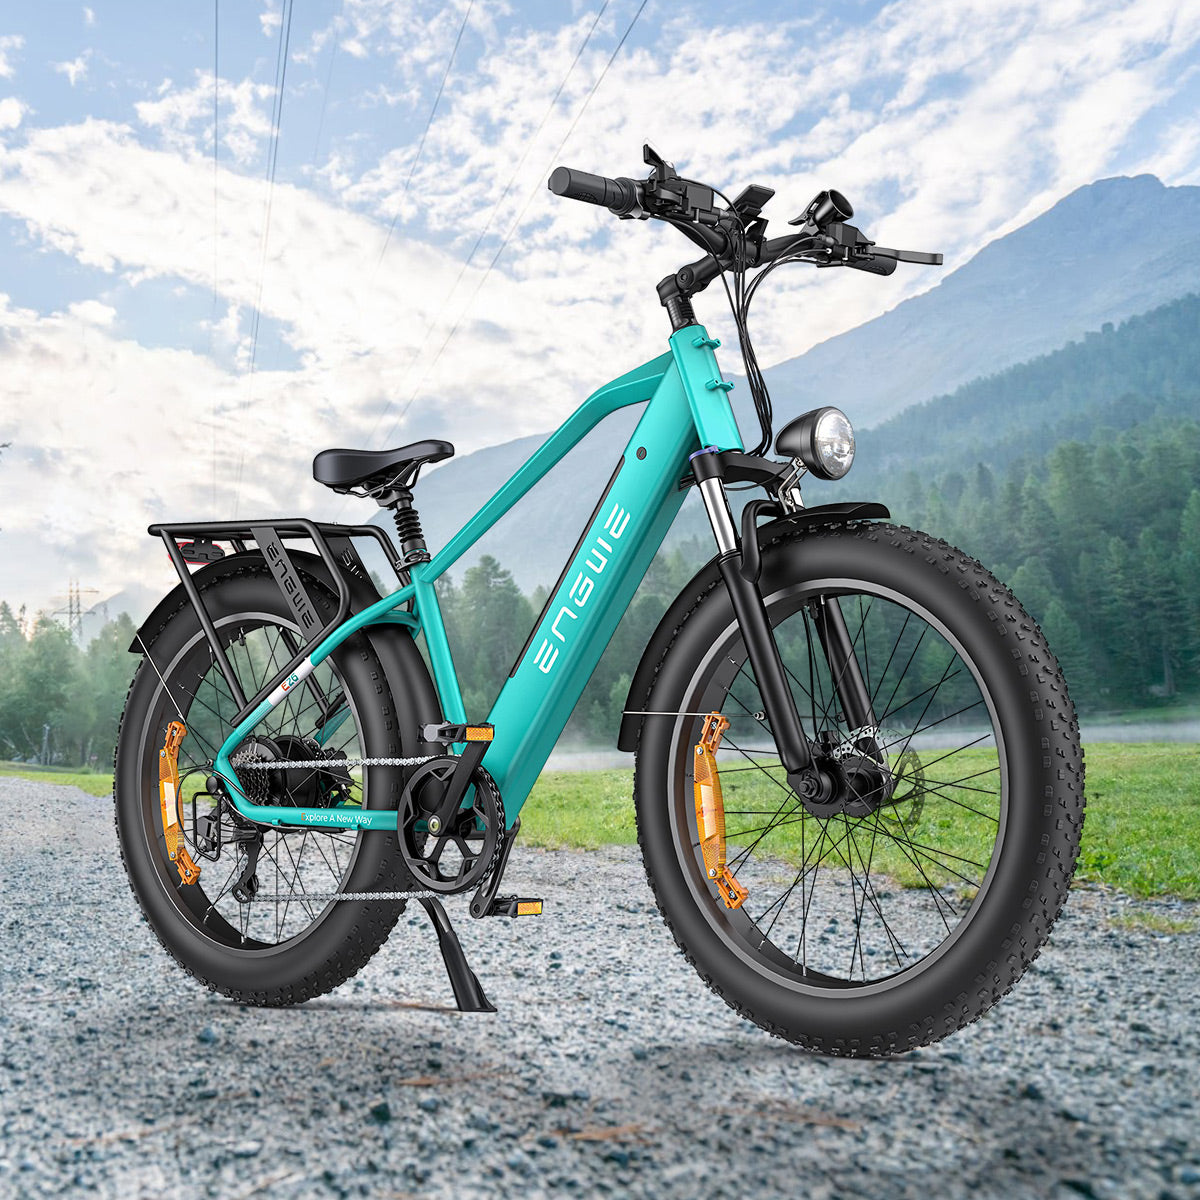 Engwe E26 250W 26" Fat Bike VTC électrique pour Homme 48V 16Ah Batterie E-bike